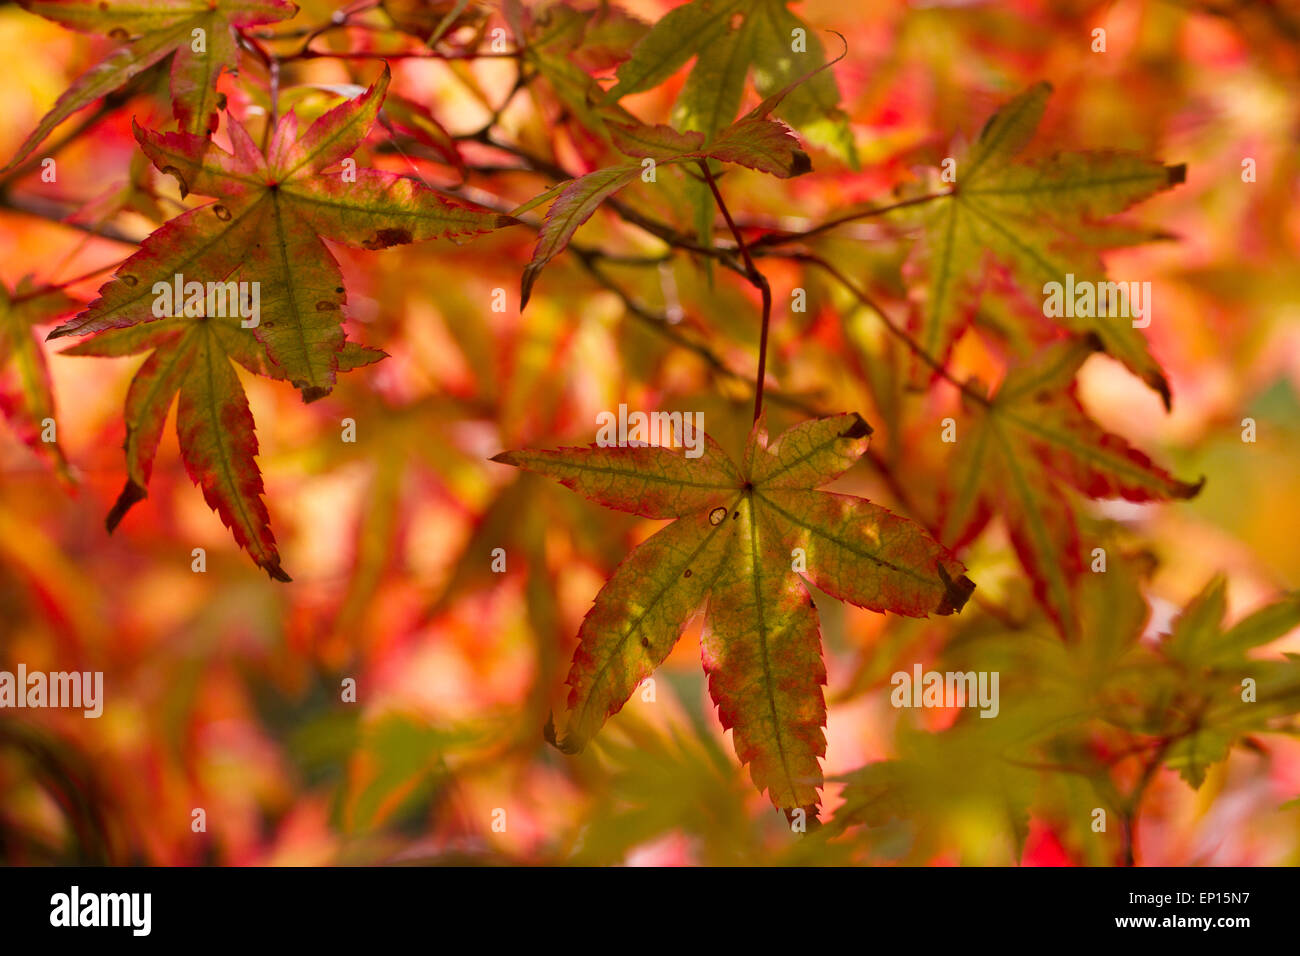 L'érable japonais (Acer palmatum) variété 'Ginko San' feuilles sur un arbre tournant dans la couleur de l'automne. Herefordshire, en Angleterre. Septembre. Banque D'Images